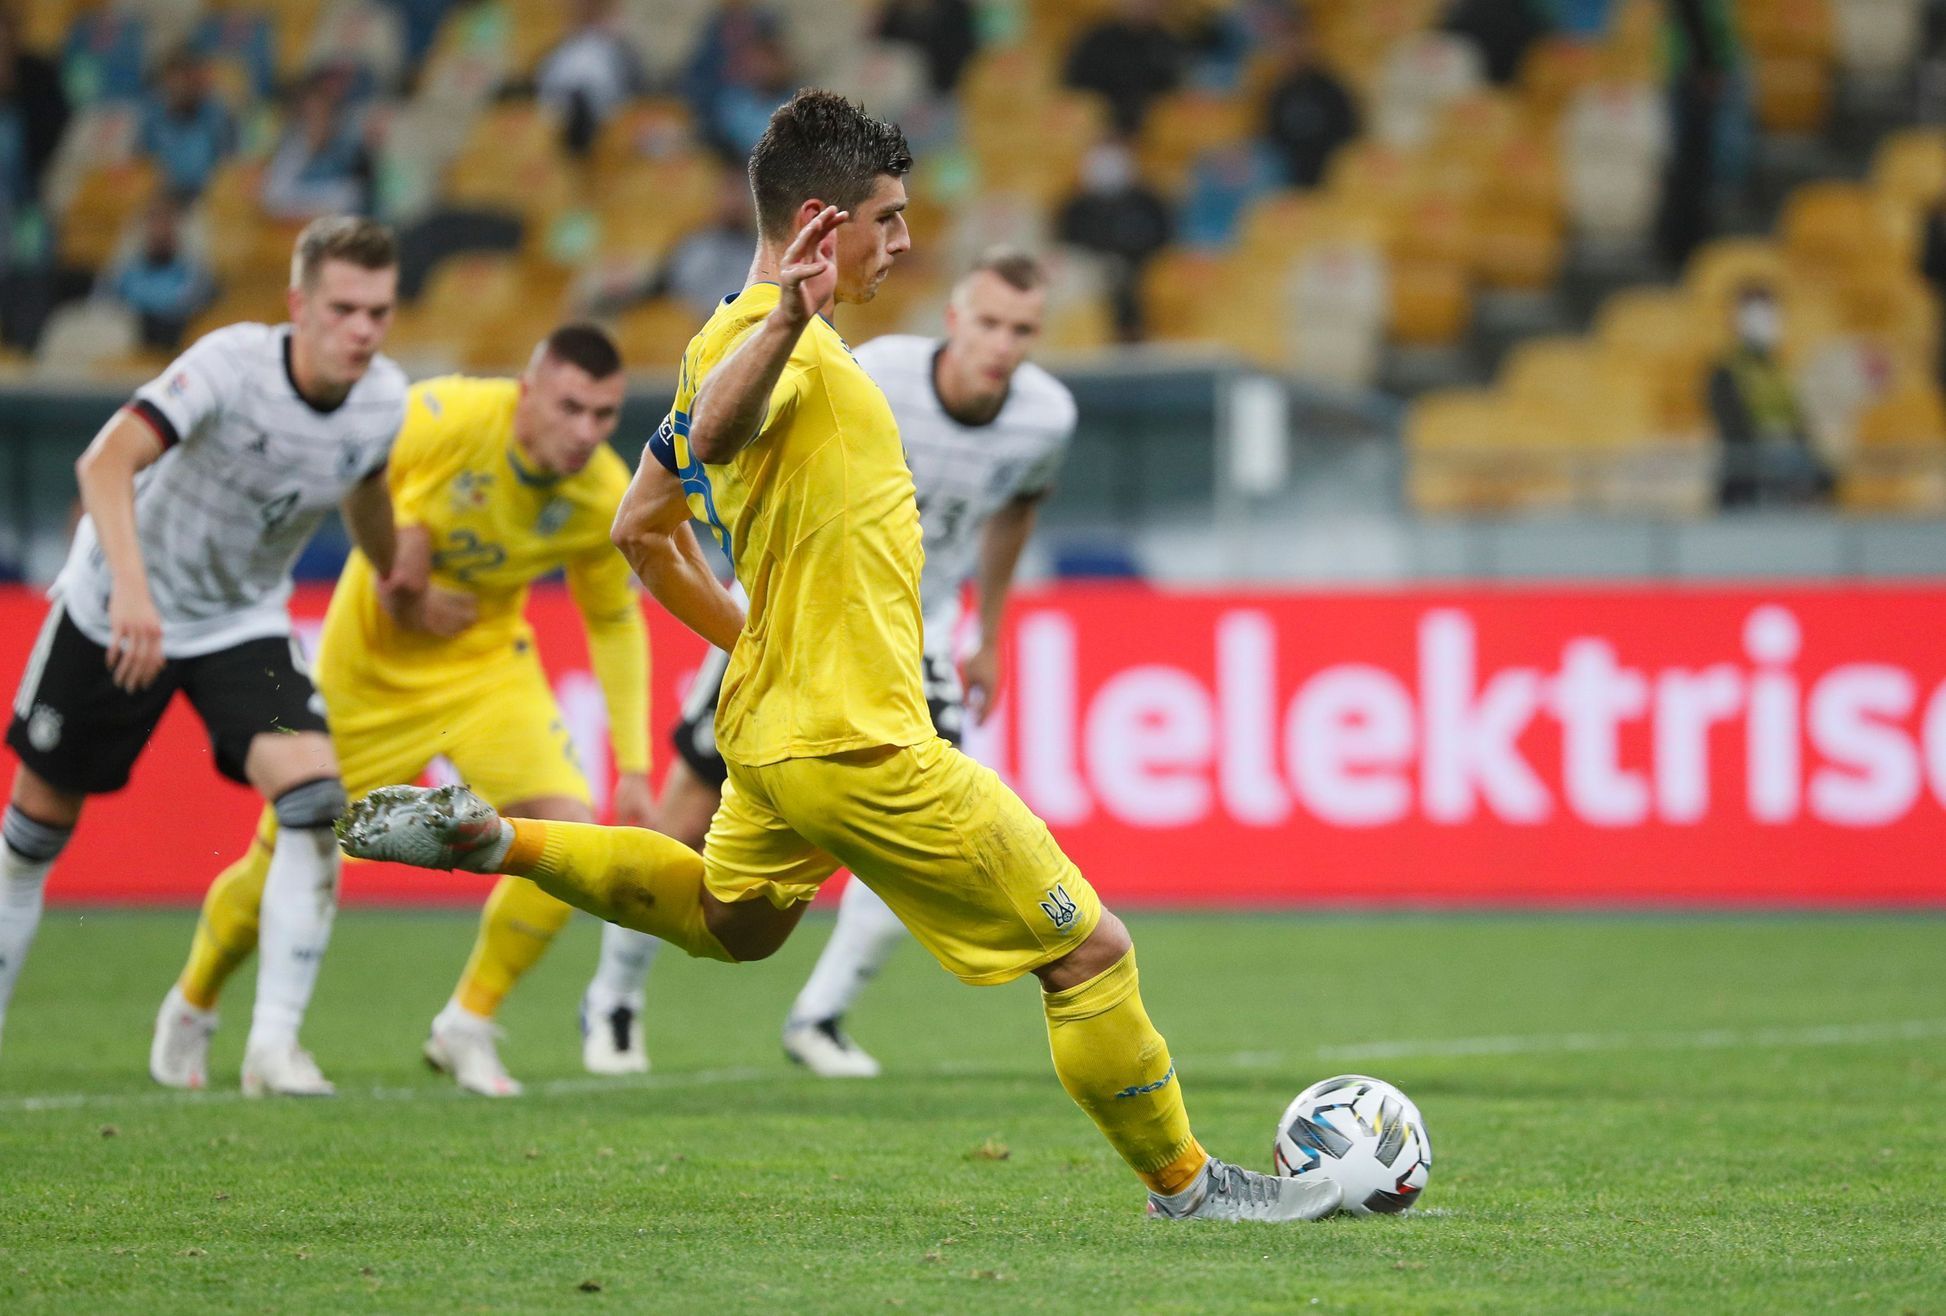 UEFA Nations League - League A - Group 4 - Ukraine v Germany Ruslan Malinovskij